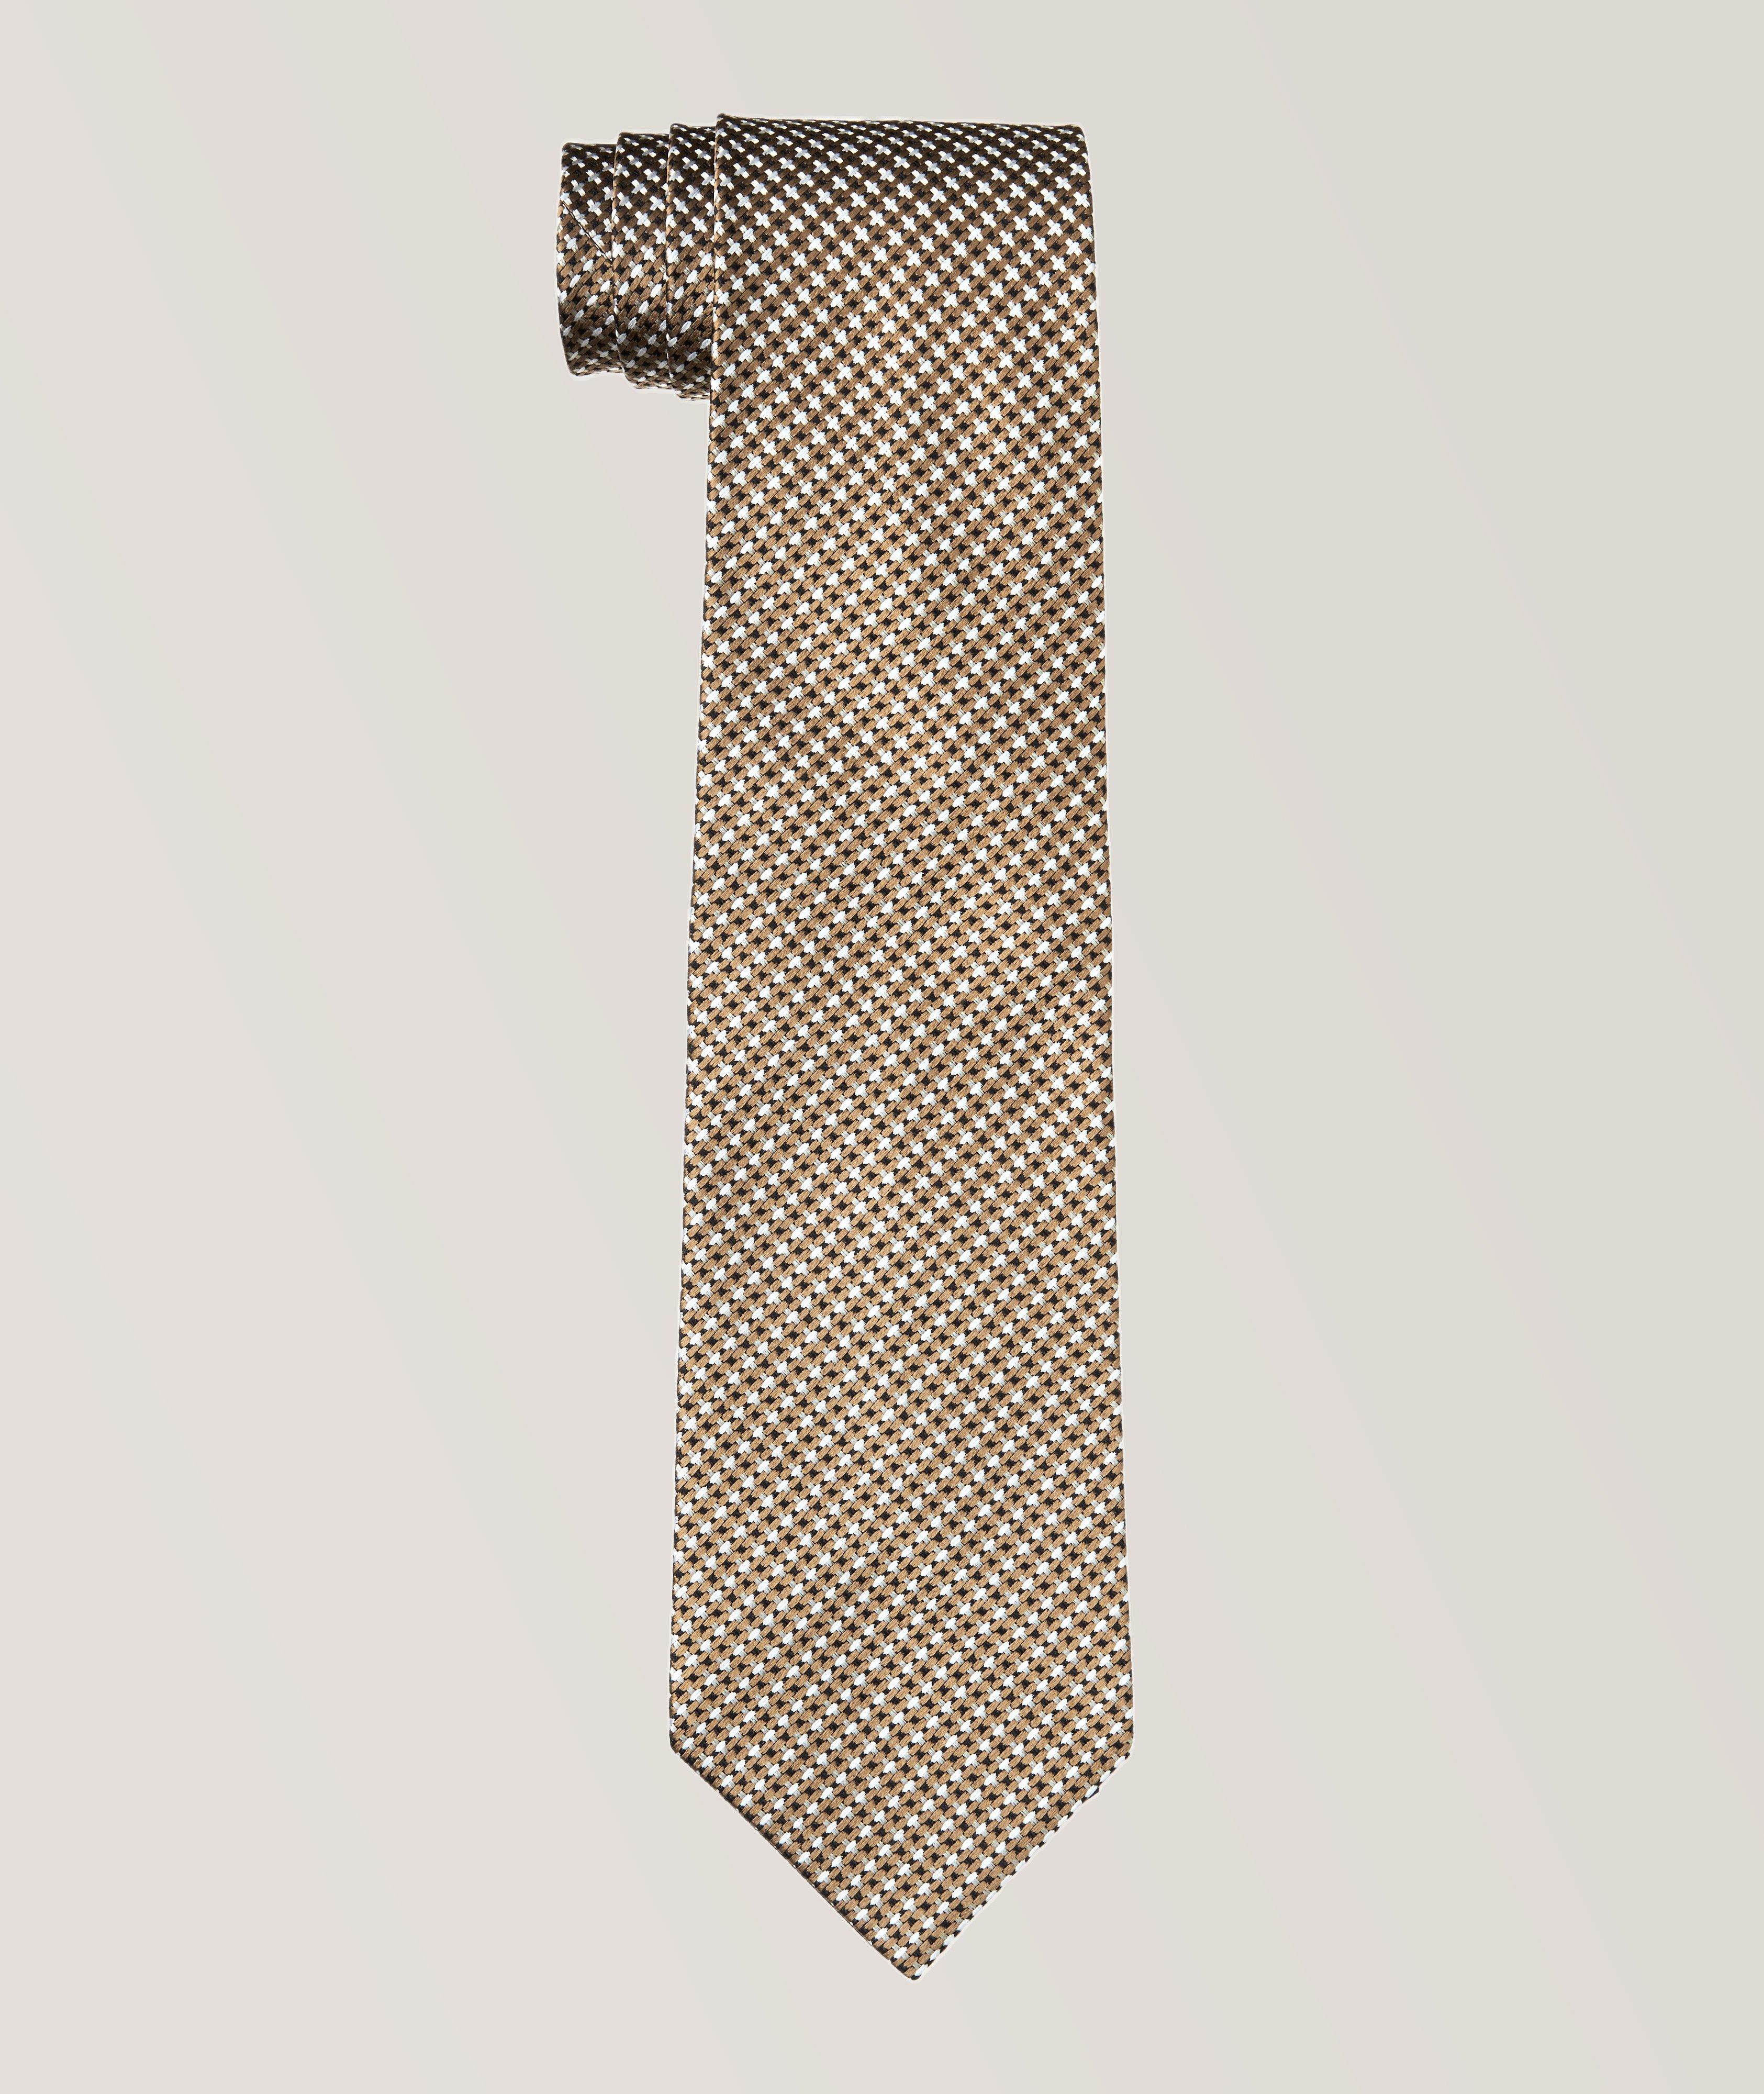 Cravate en soie à motif croisé image 0